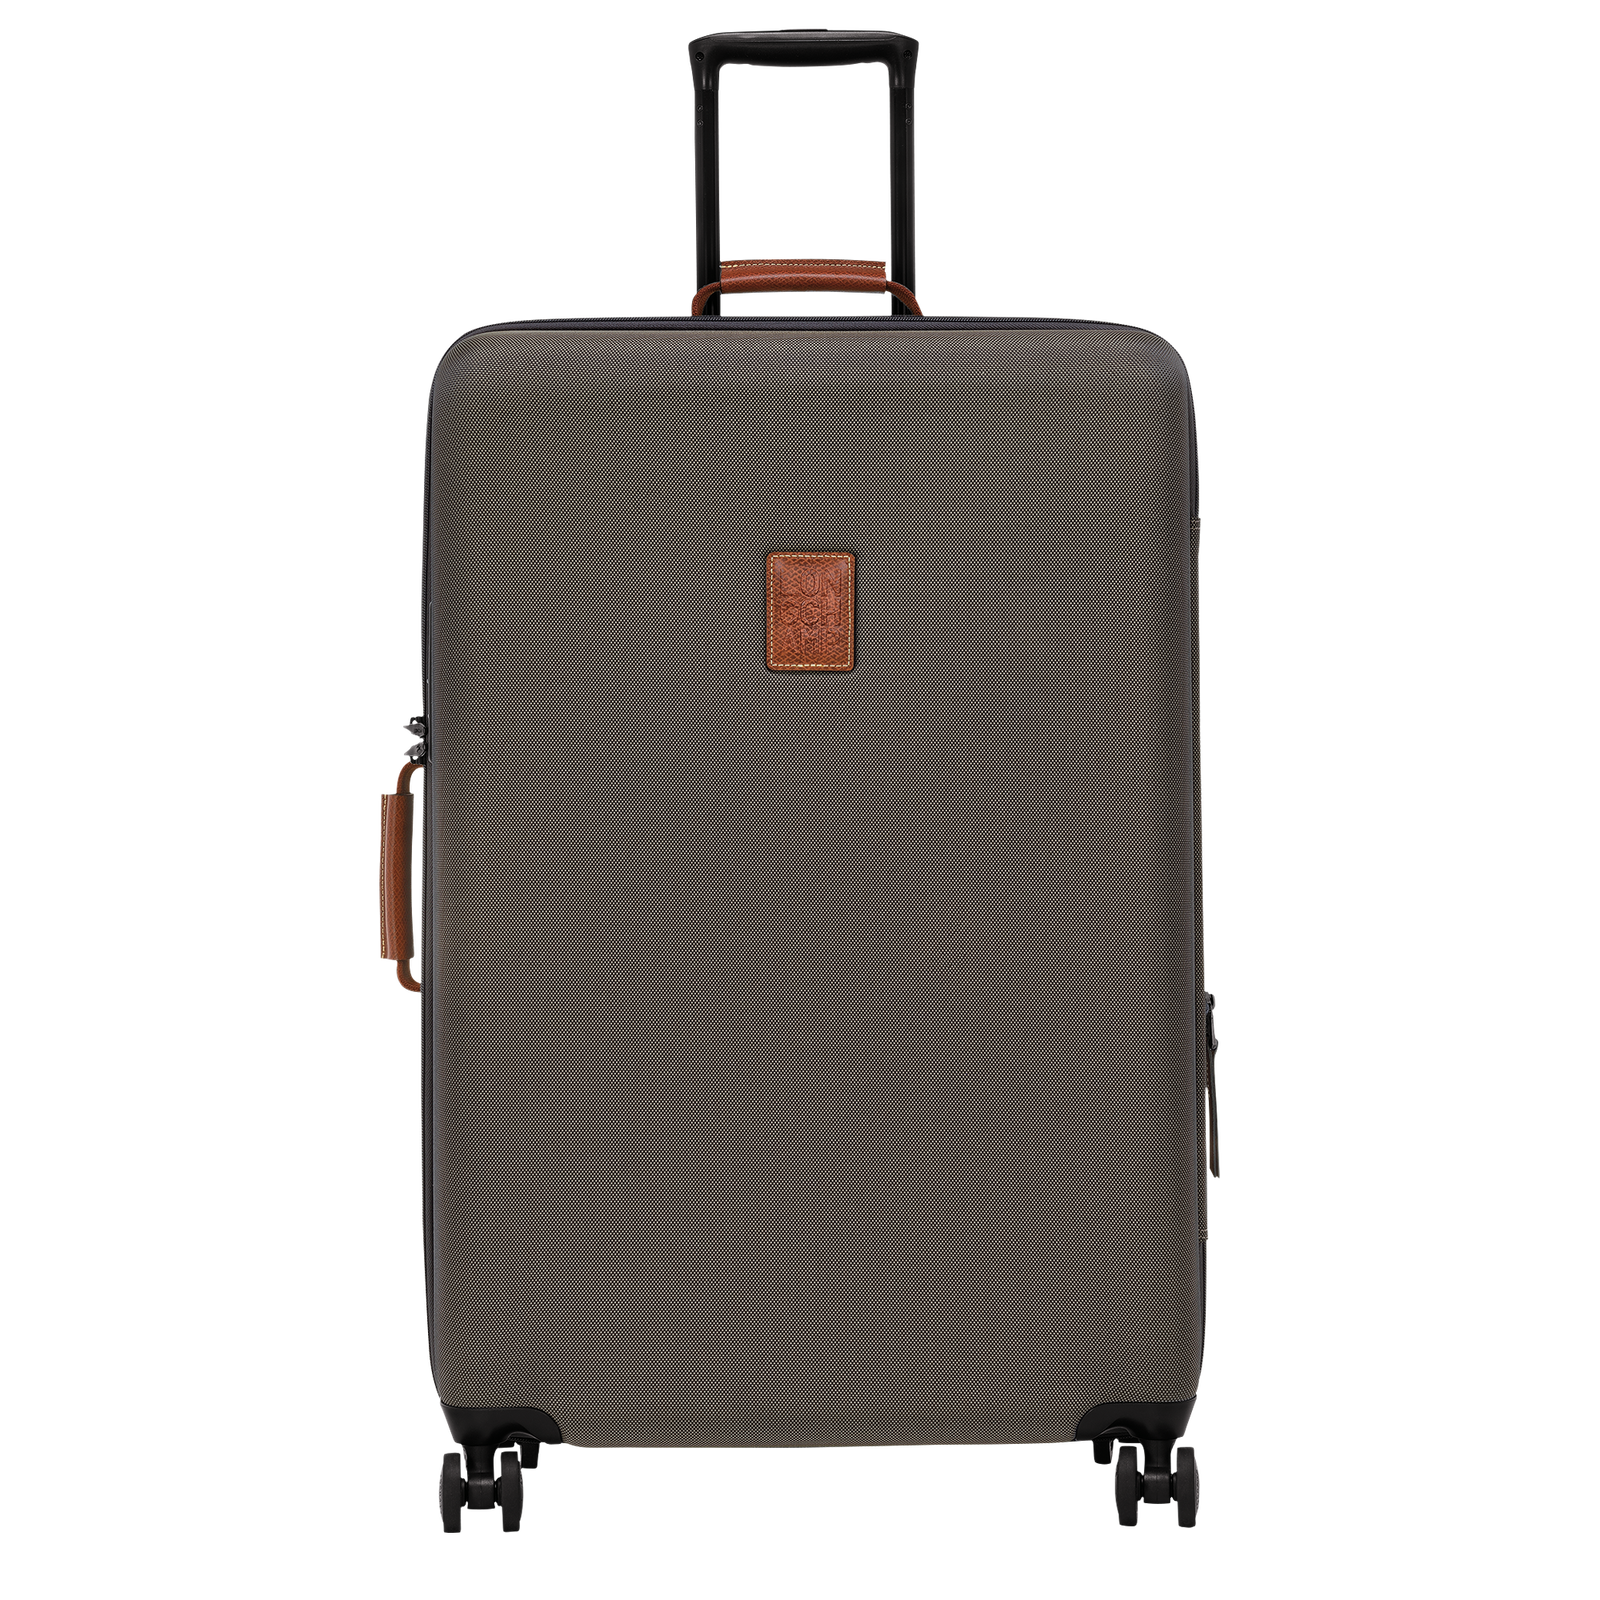 ボックスフォード XL スーツケース ブラウン - ファブリック